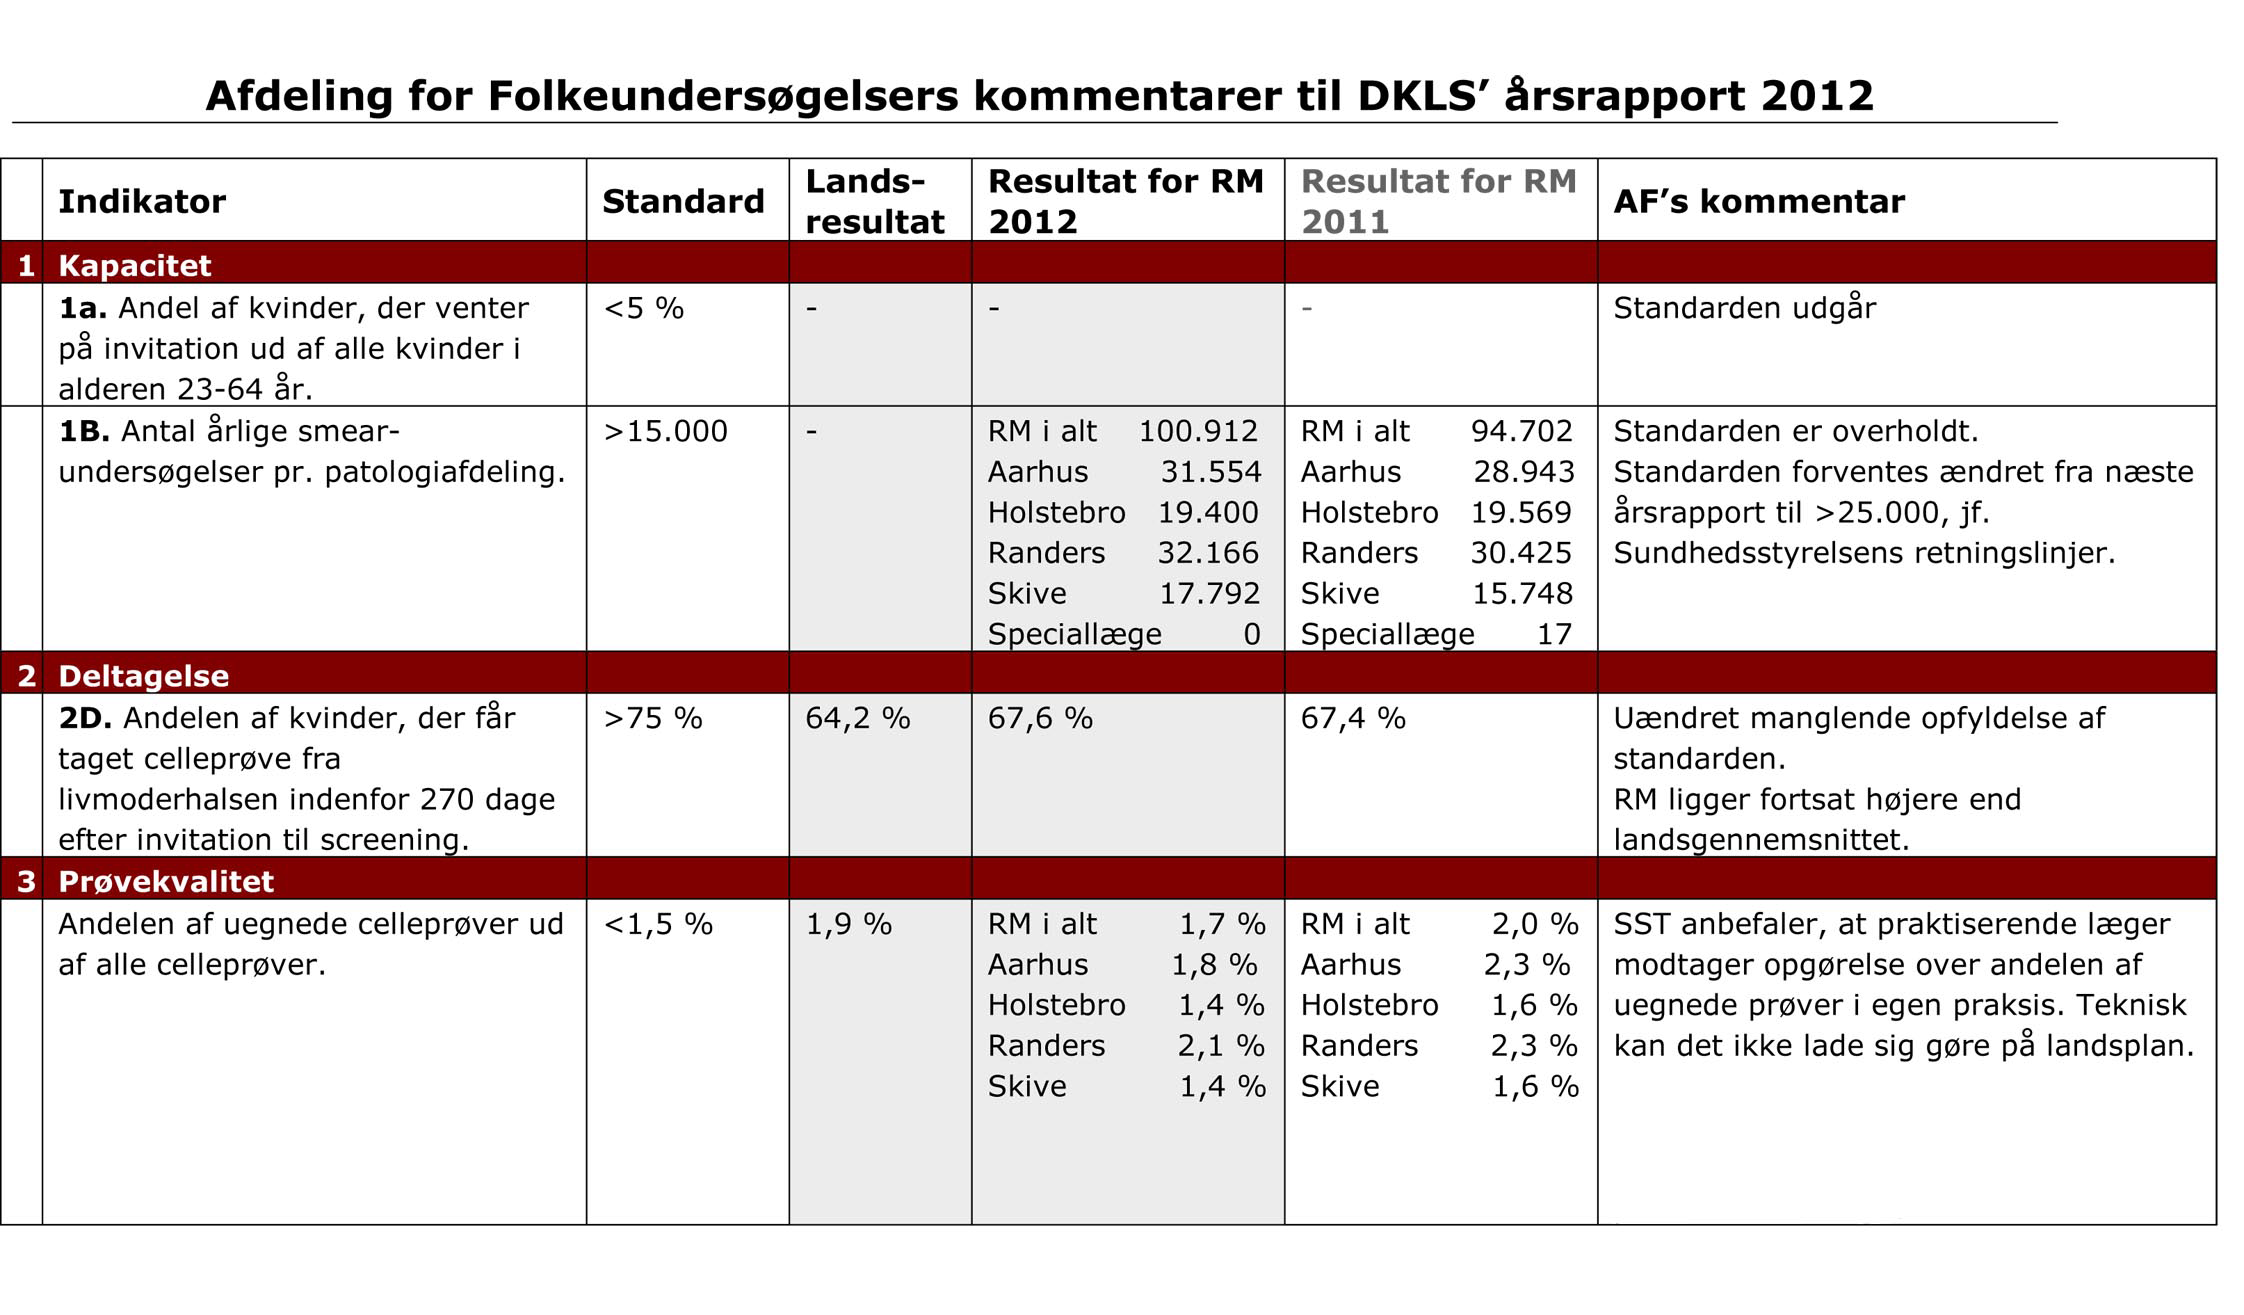 Afdeling for Folkeundersøgelser Livmoderhalskræftscreening DKLS rapport Dansk Kvalitetsdatabase for Livmoderhalskræftscreening (DKLS) udsendte d. 28.